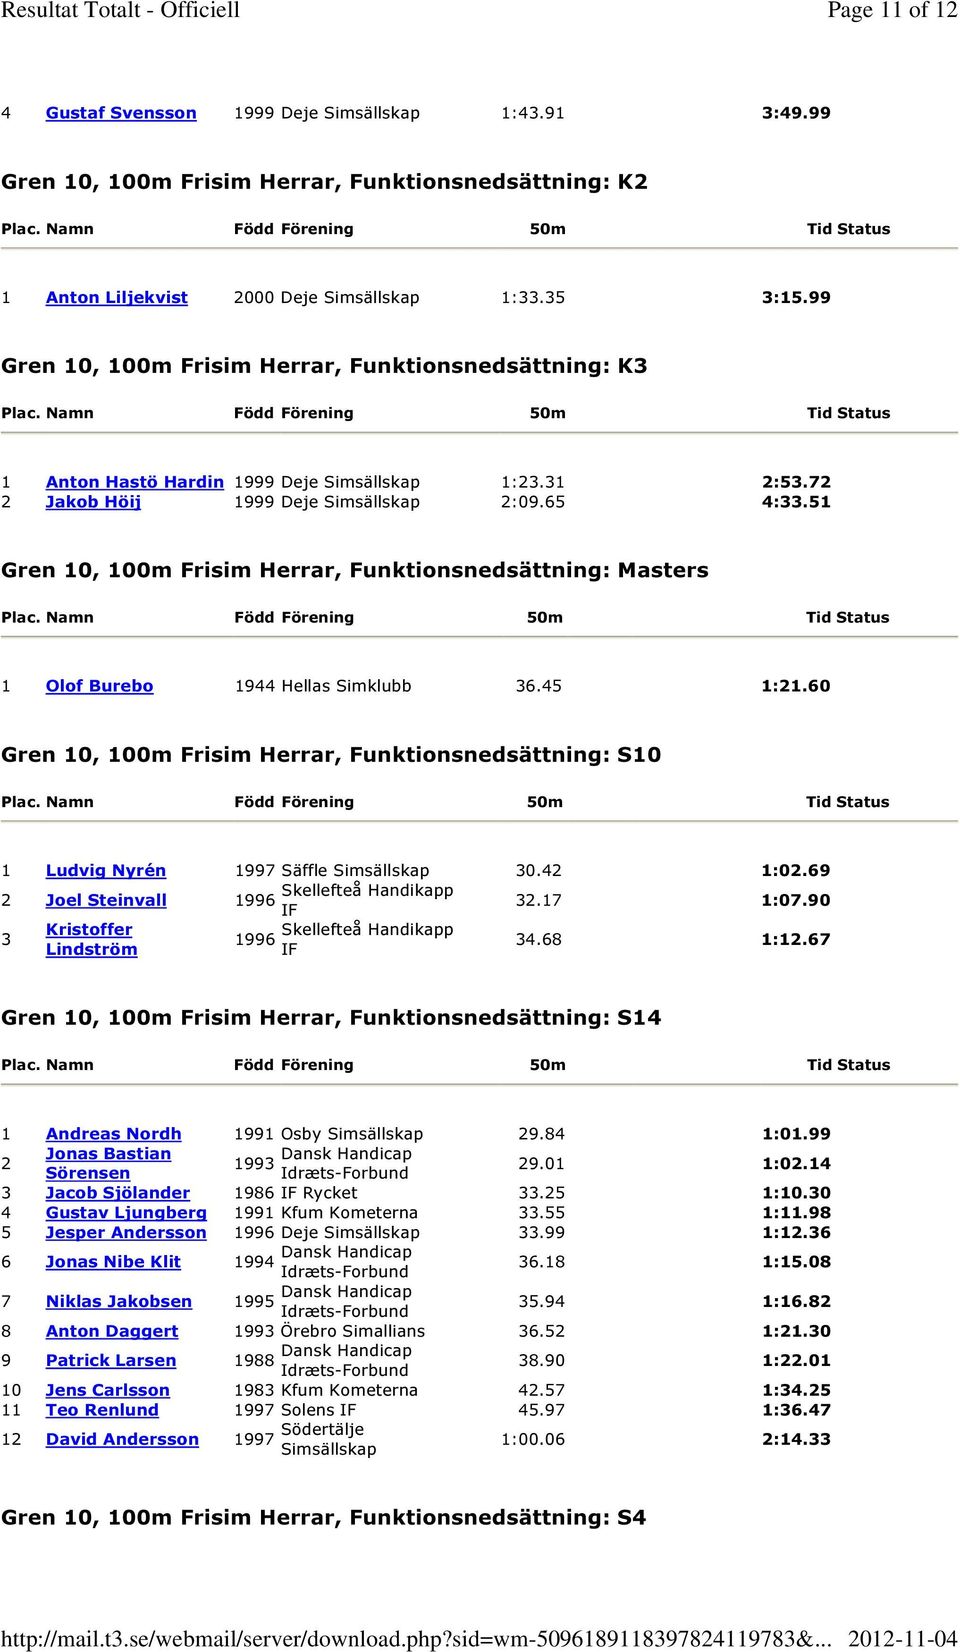 51 Gren 10, 100m Frisim Herrar, Funktionsnedsättning: Masters 1 Olof Burebo 1944 Hellas Simklubb 36.45 1:21.60 Gren 10, 100m Frisim Herrar, Funktionsnedsättning: S10 1 Ludvig Nyrén 1997 Säffle 30.